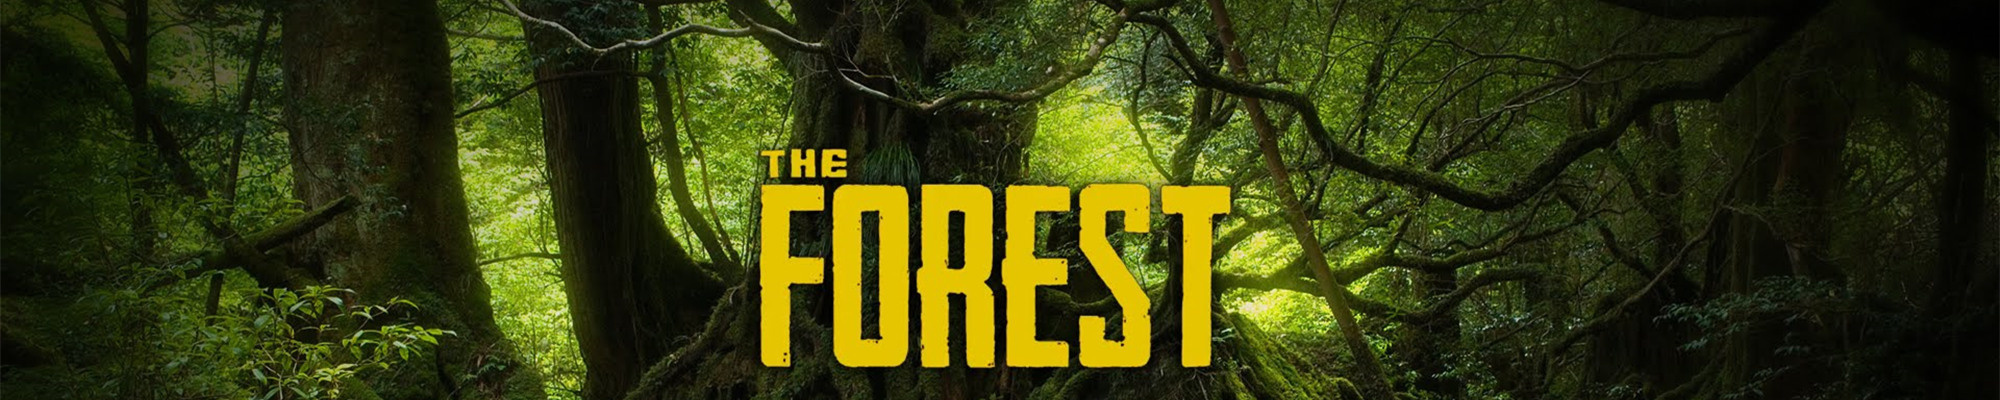 关于《the forest》的个人解读:在"迷失森林"之中人究竟会失去什么?